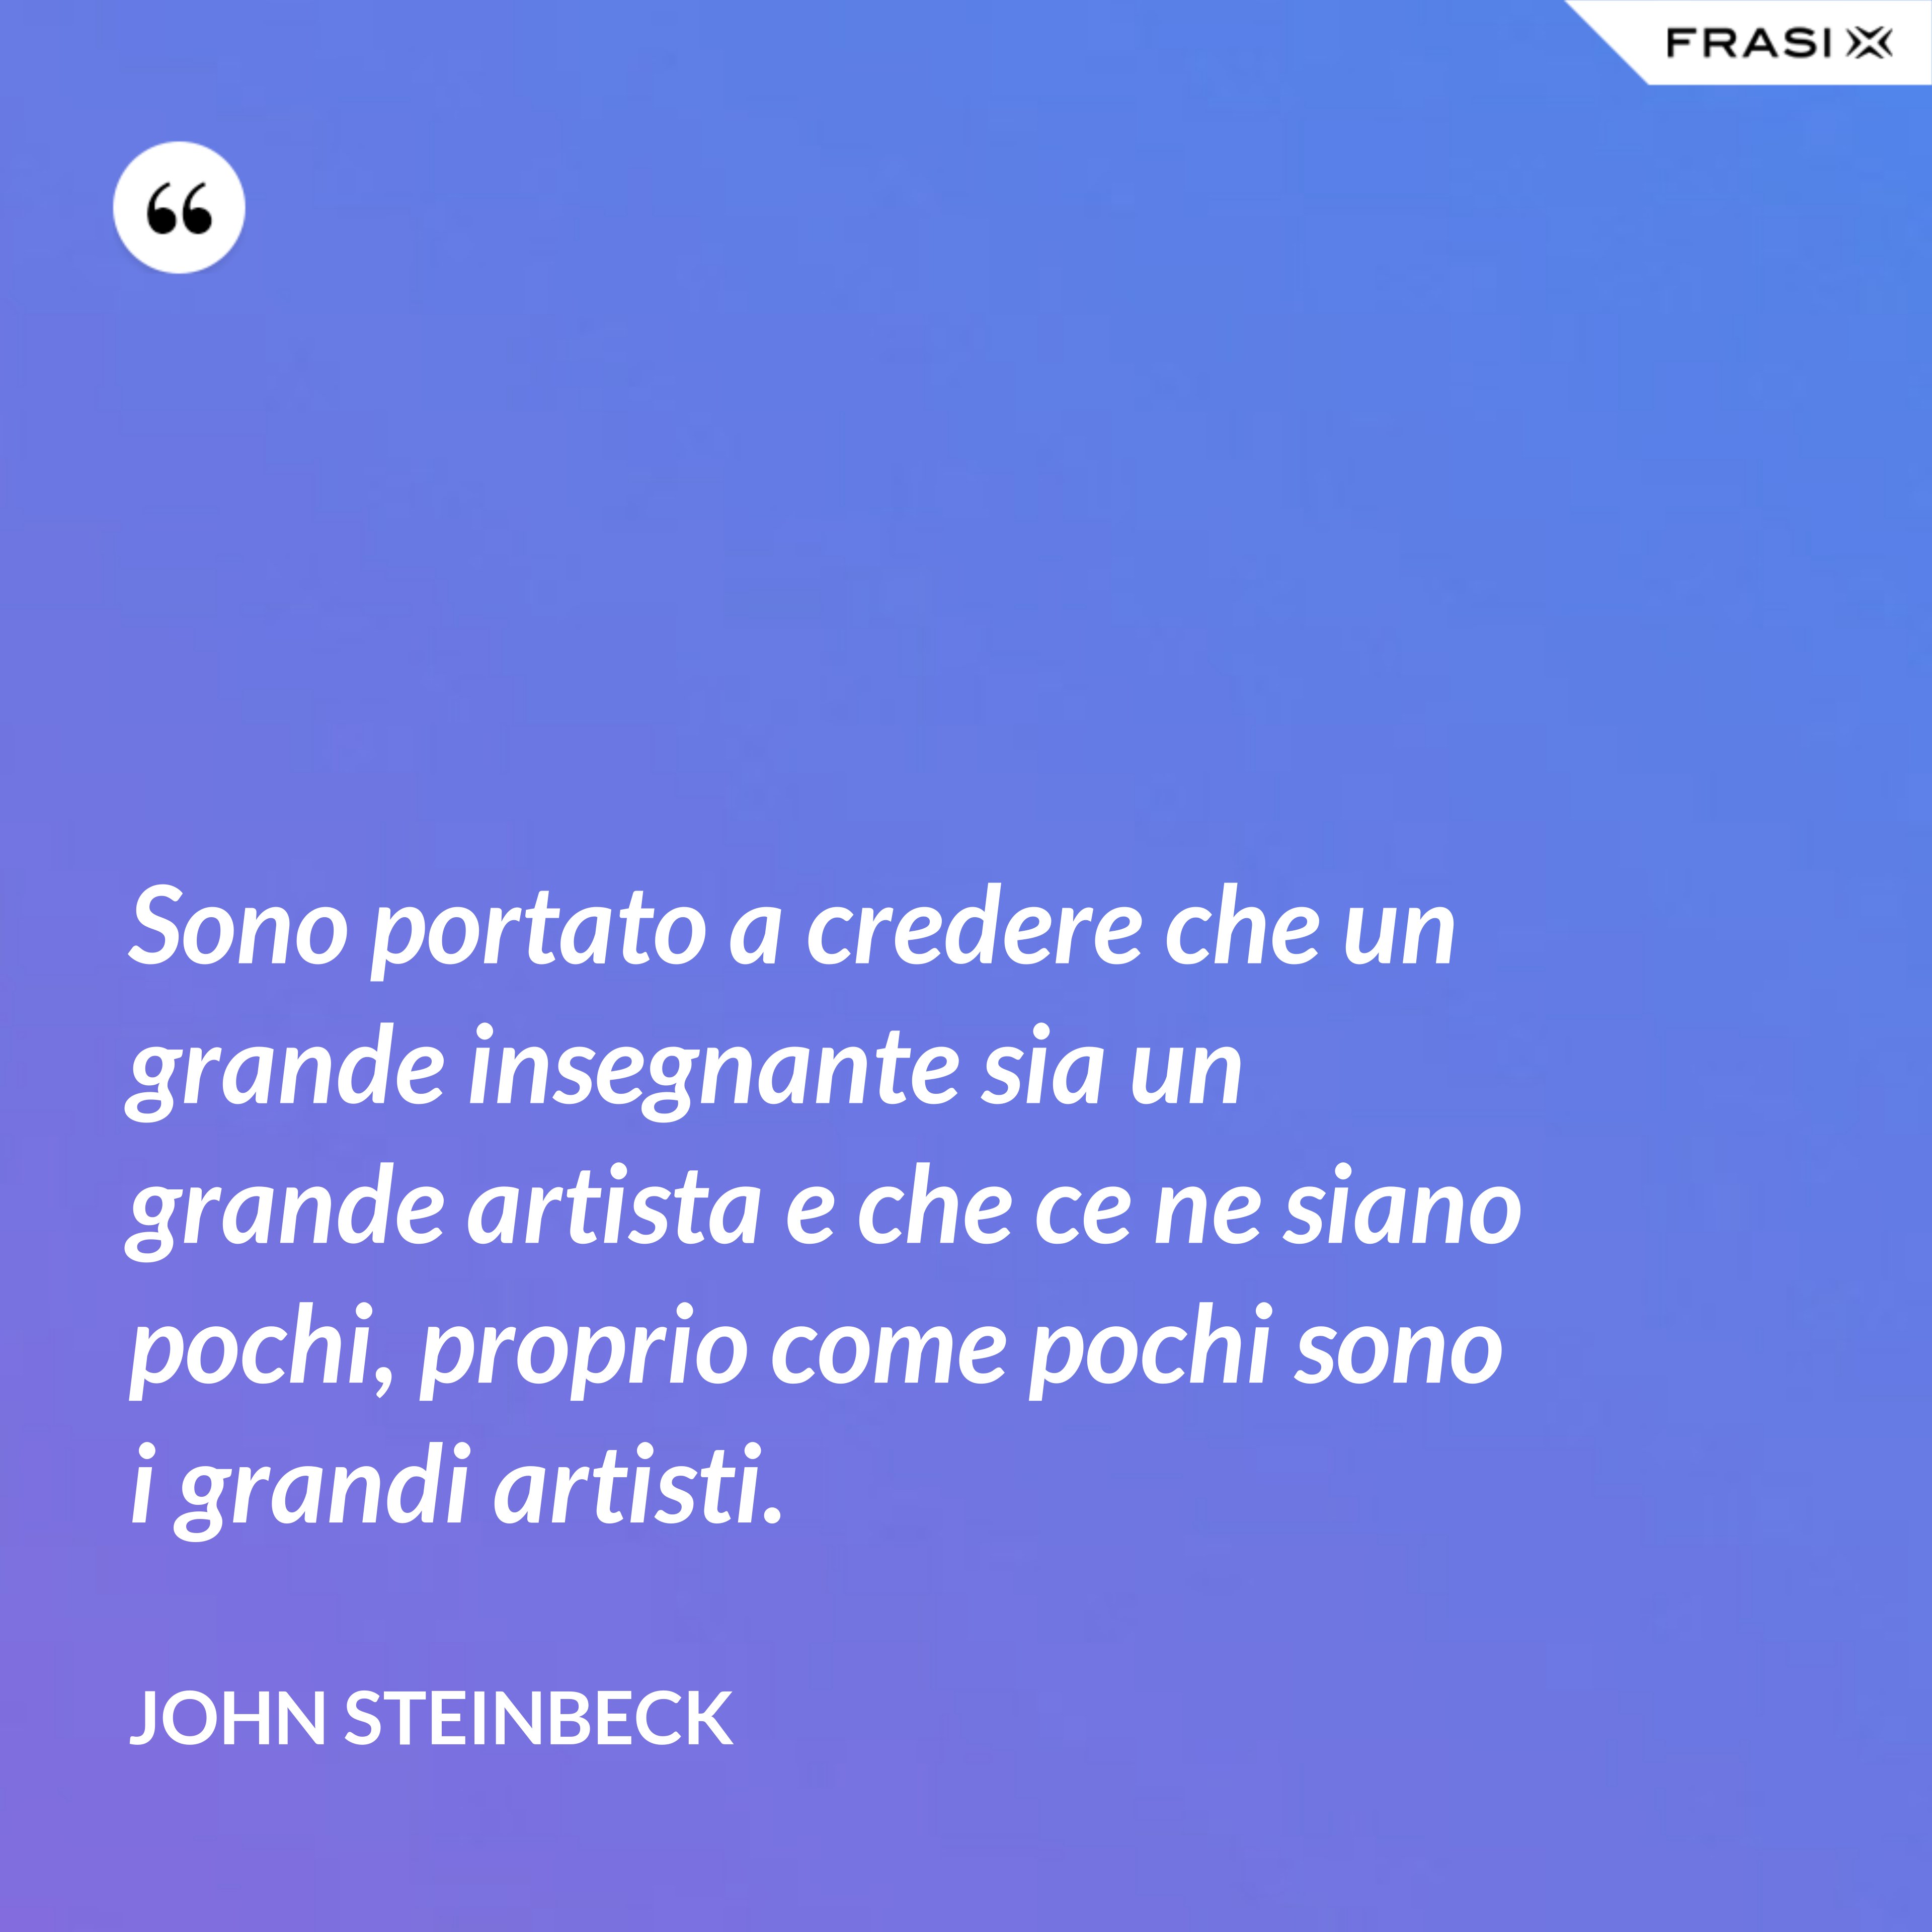 Sono portato a credere che un grande insegnante sia un grande artista e che ce ne siano pochi, proprio come pochi sono i grandi artisti. - John Steinbeck